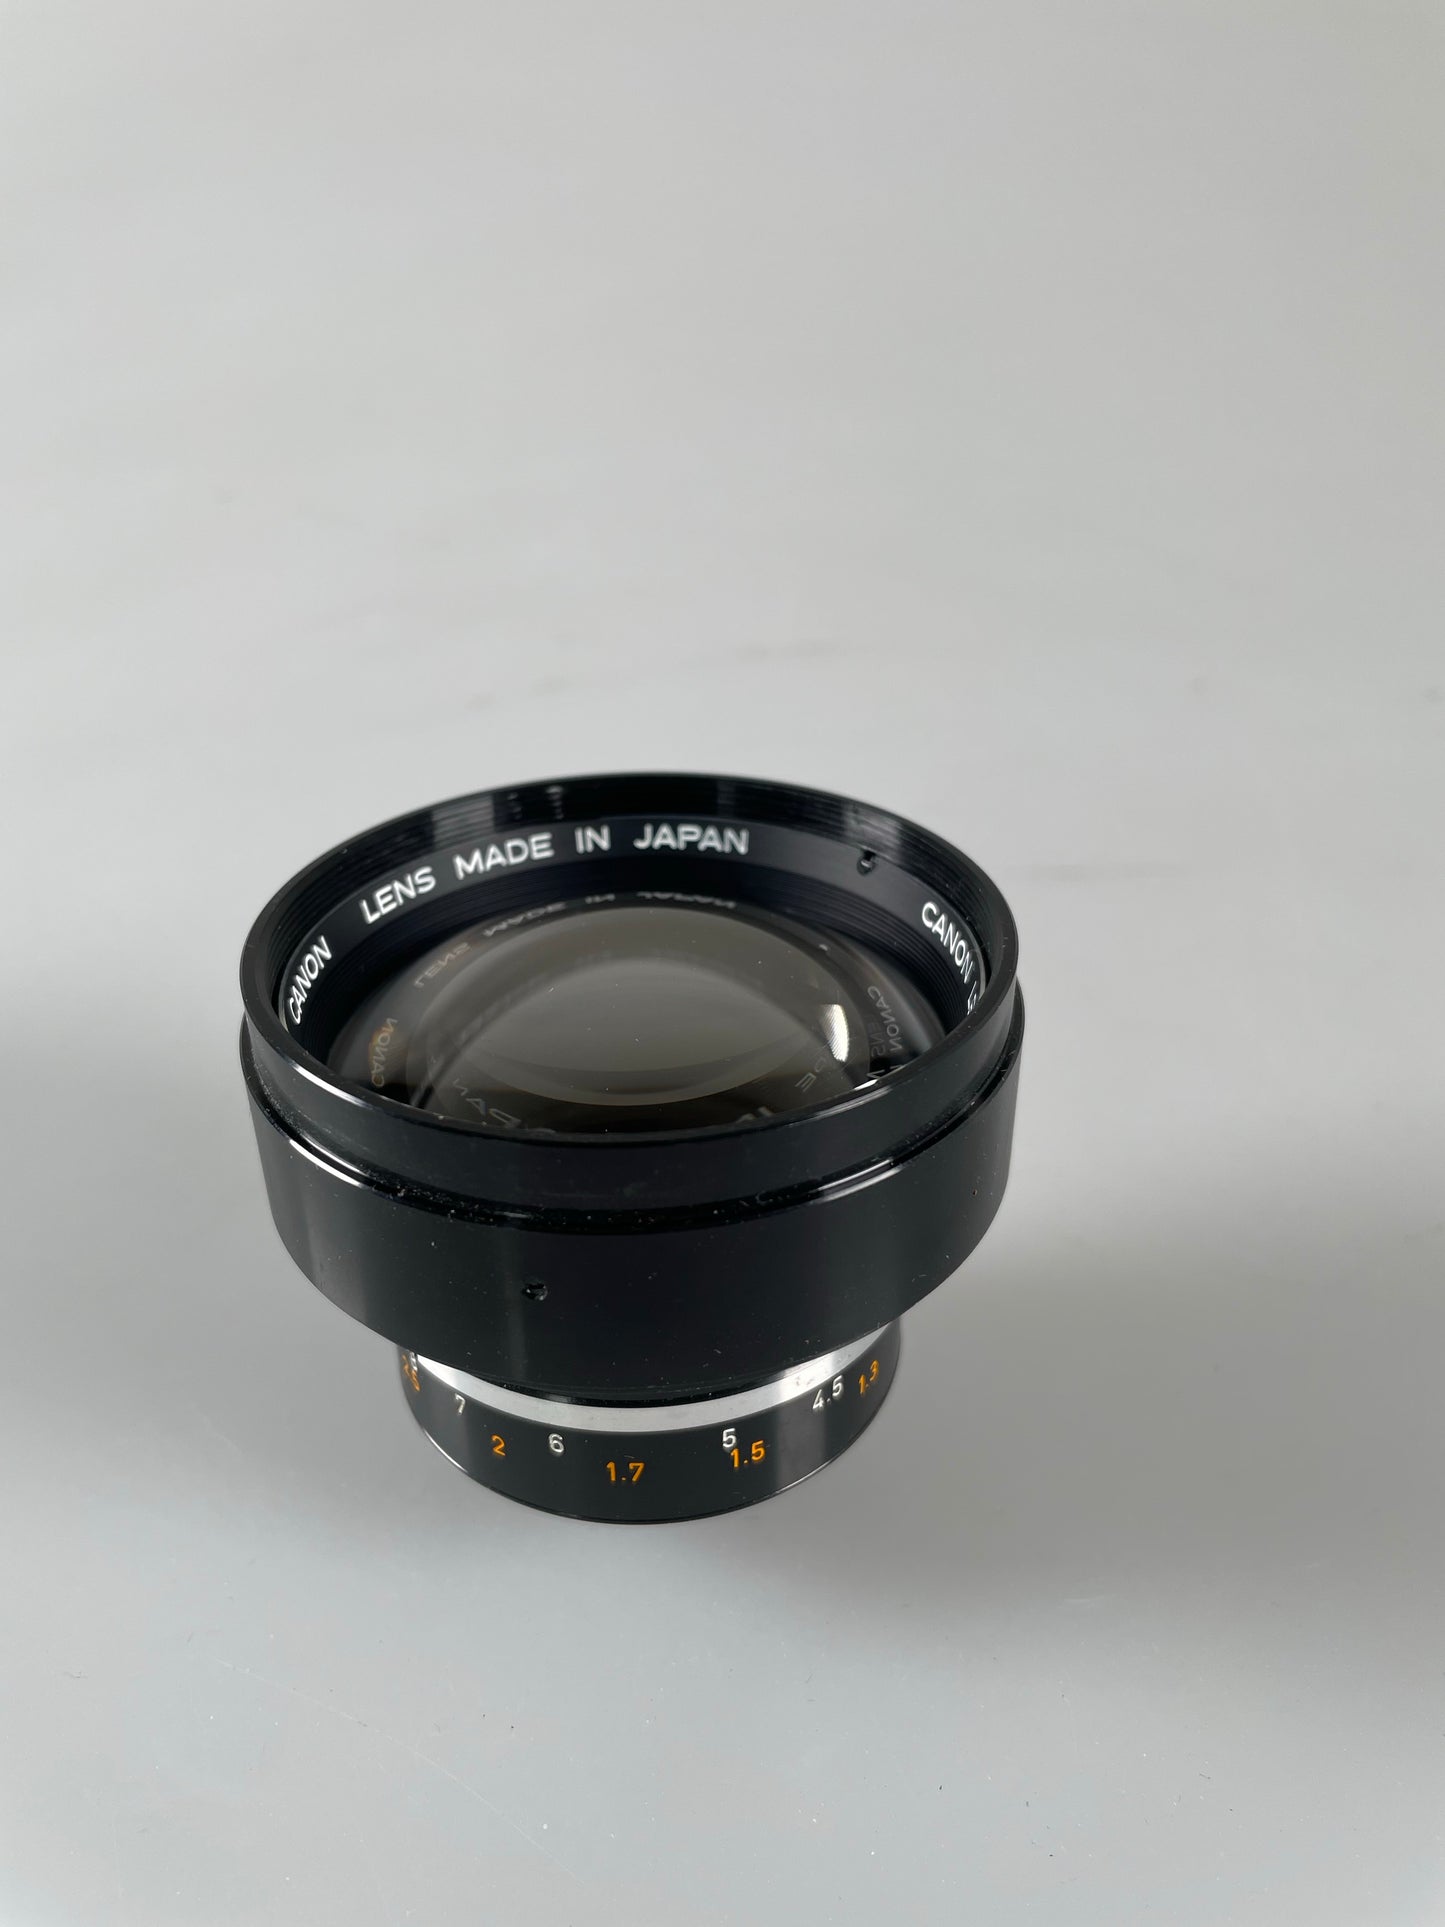 Canon EX 95mm F3.5 Lens For EX Cameras w/ Caps